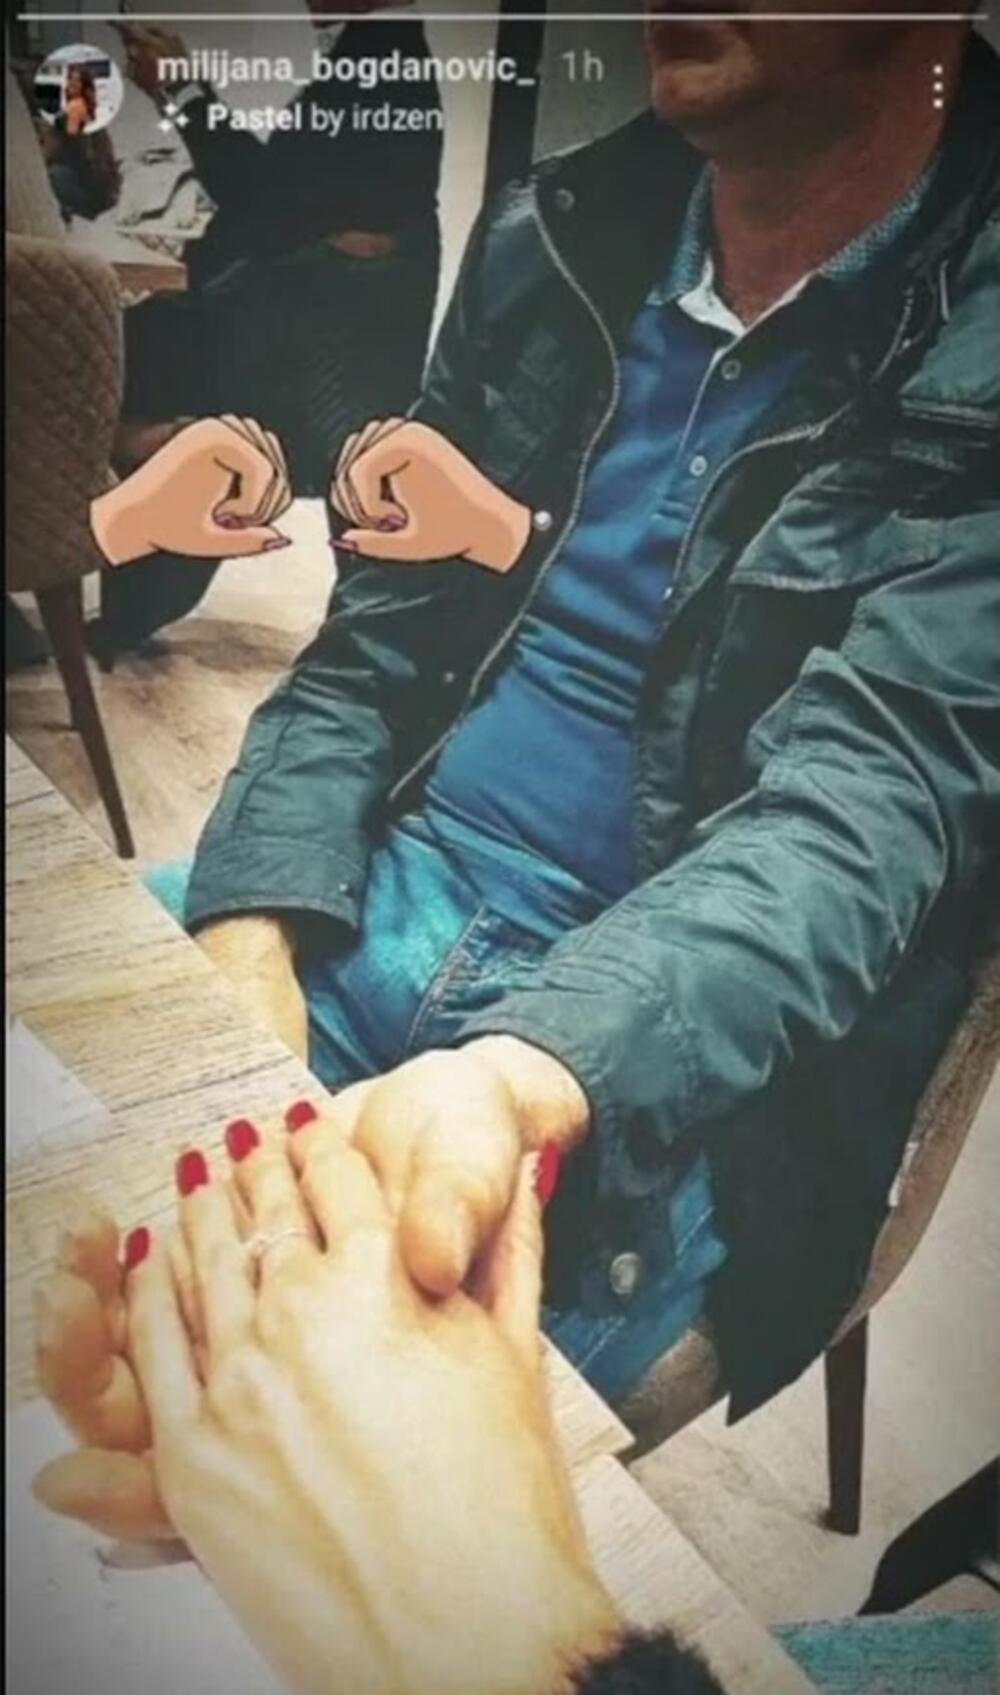 Milijana je krajem prošle godine na svom Instagram profilu objavila fotografiju sa izabranikom, njih dvoje su se držali za ruke i uživali u kafiću.